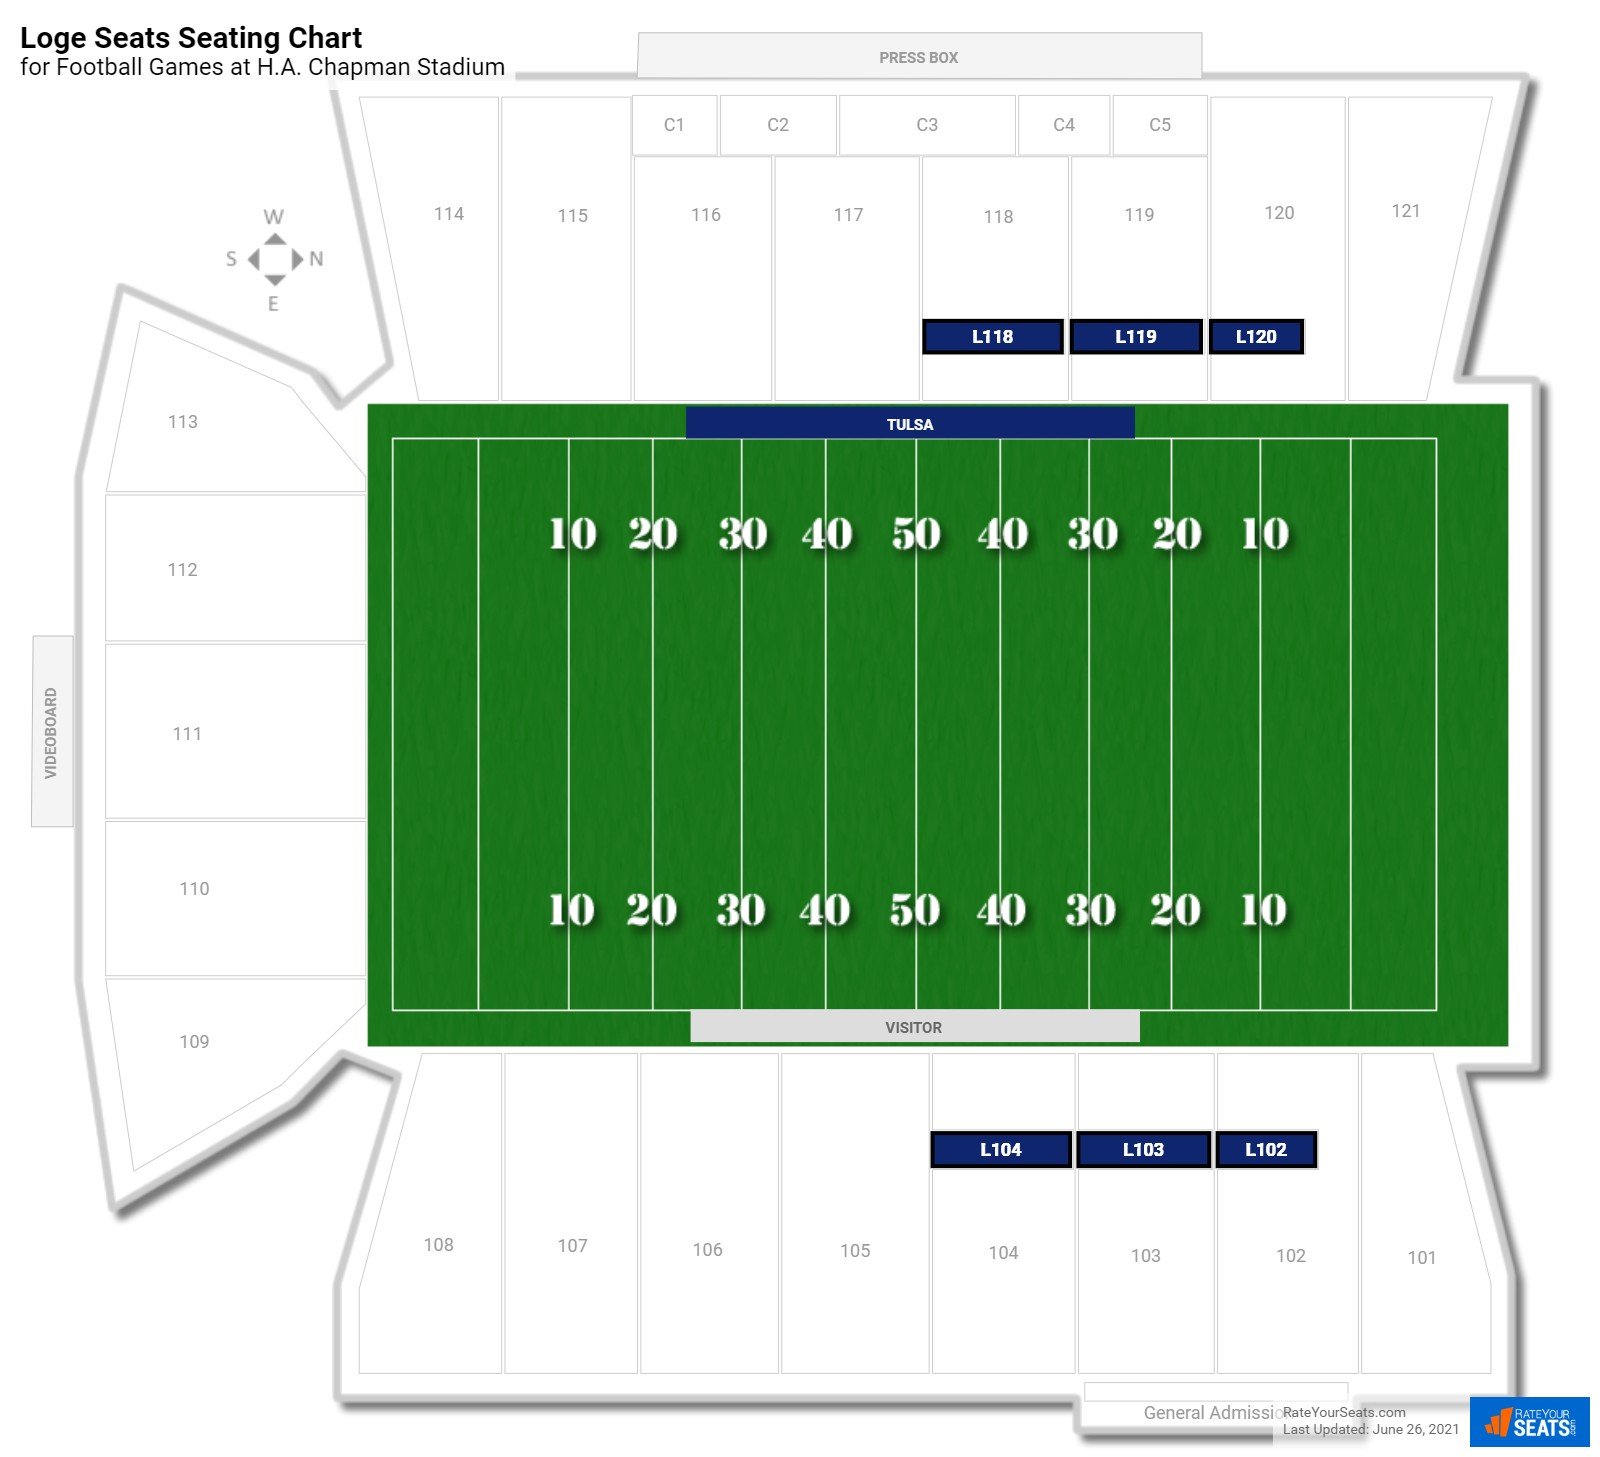 Football Loge Seats Seating Chart at H.A. Chapman Stadium